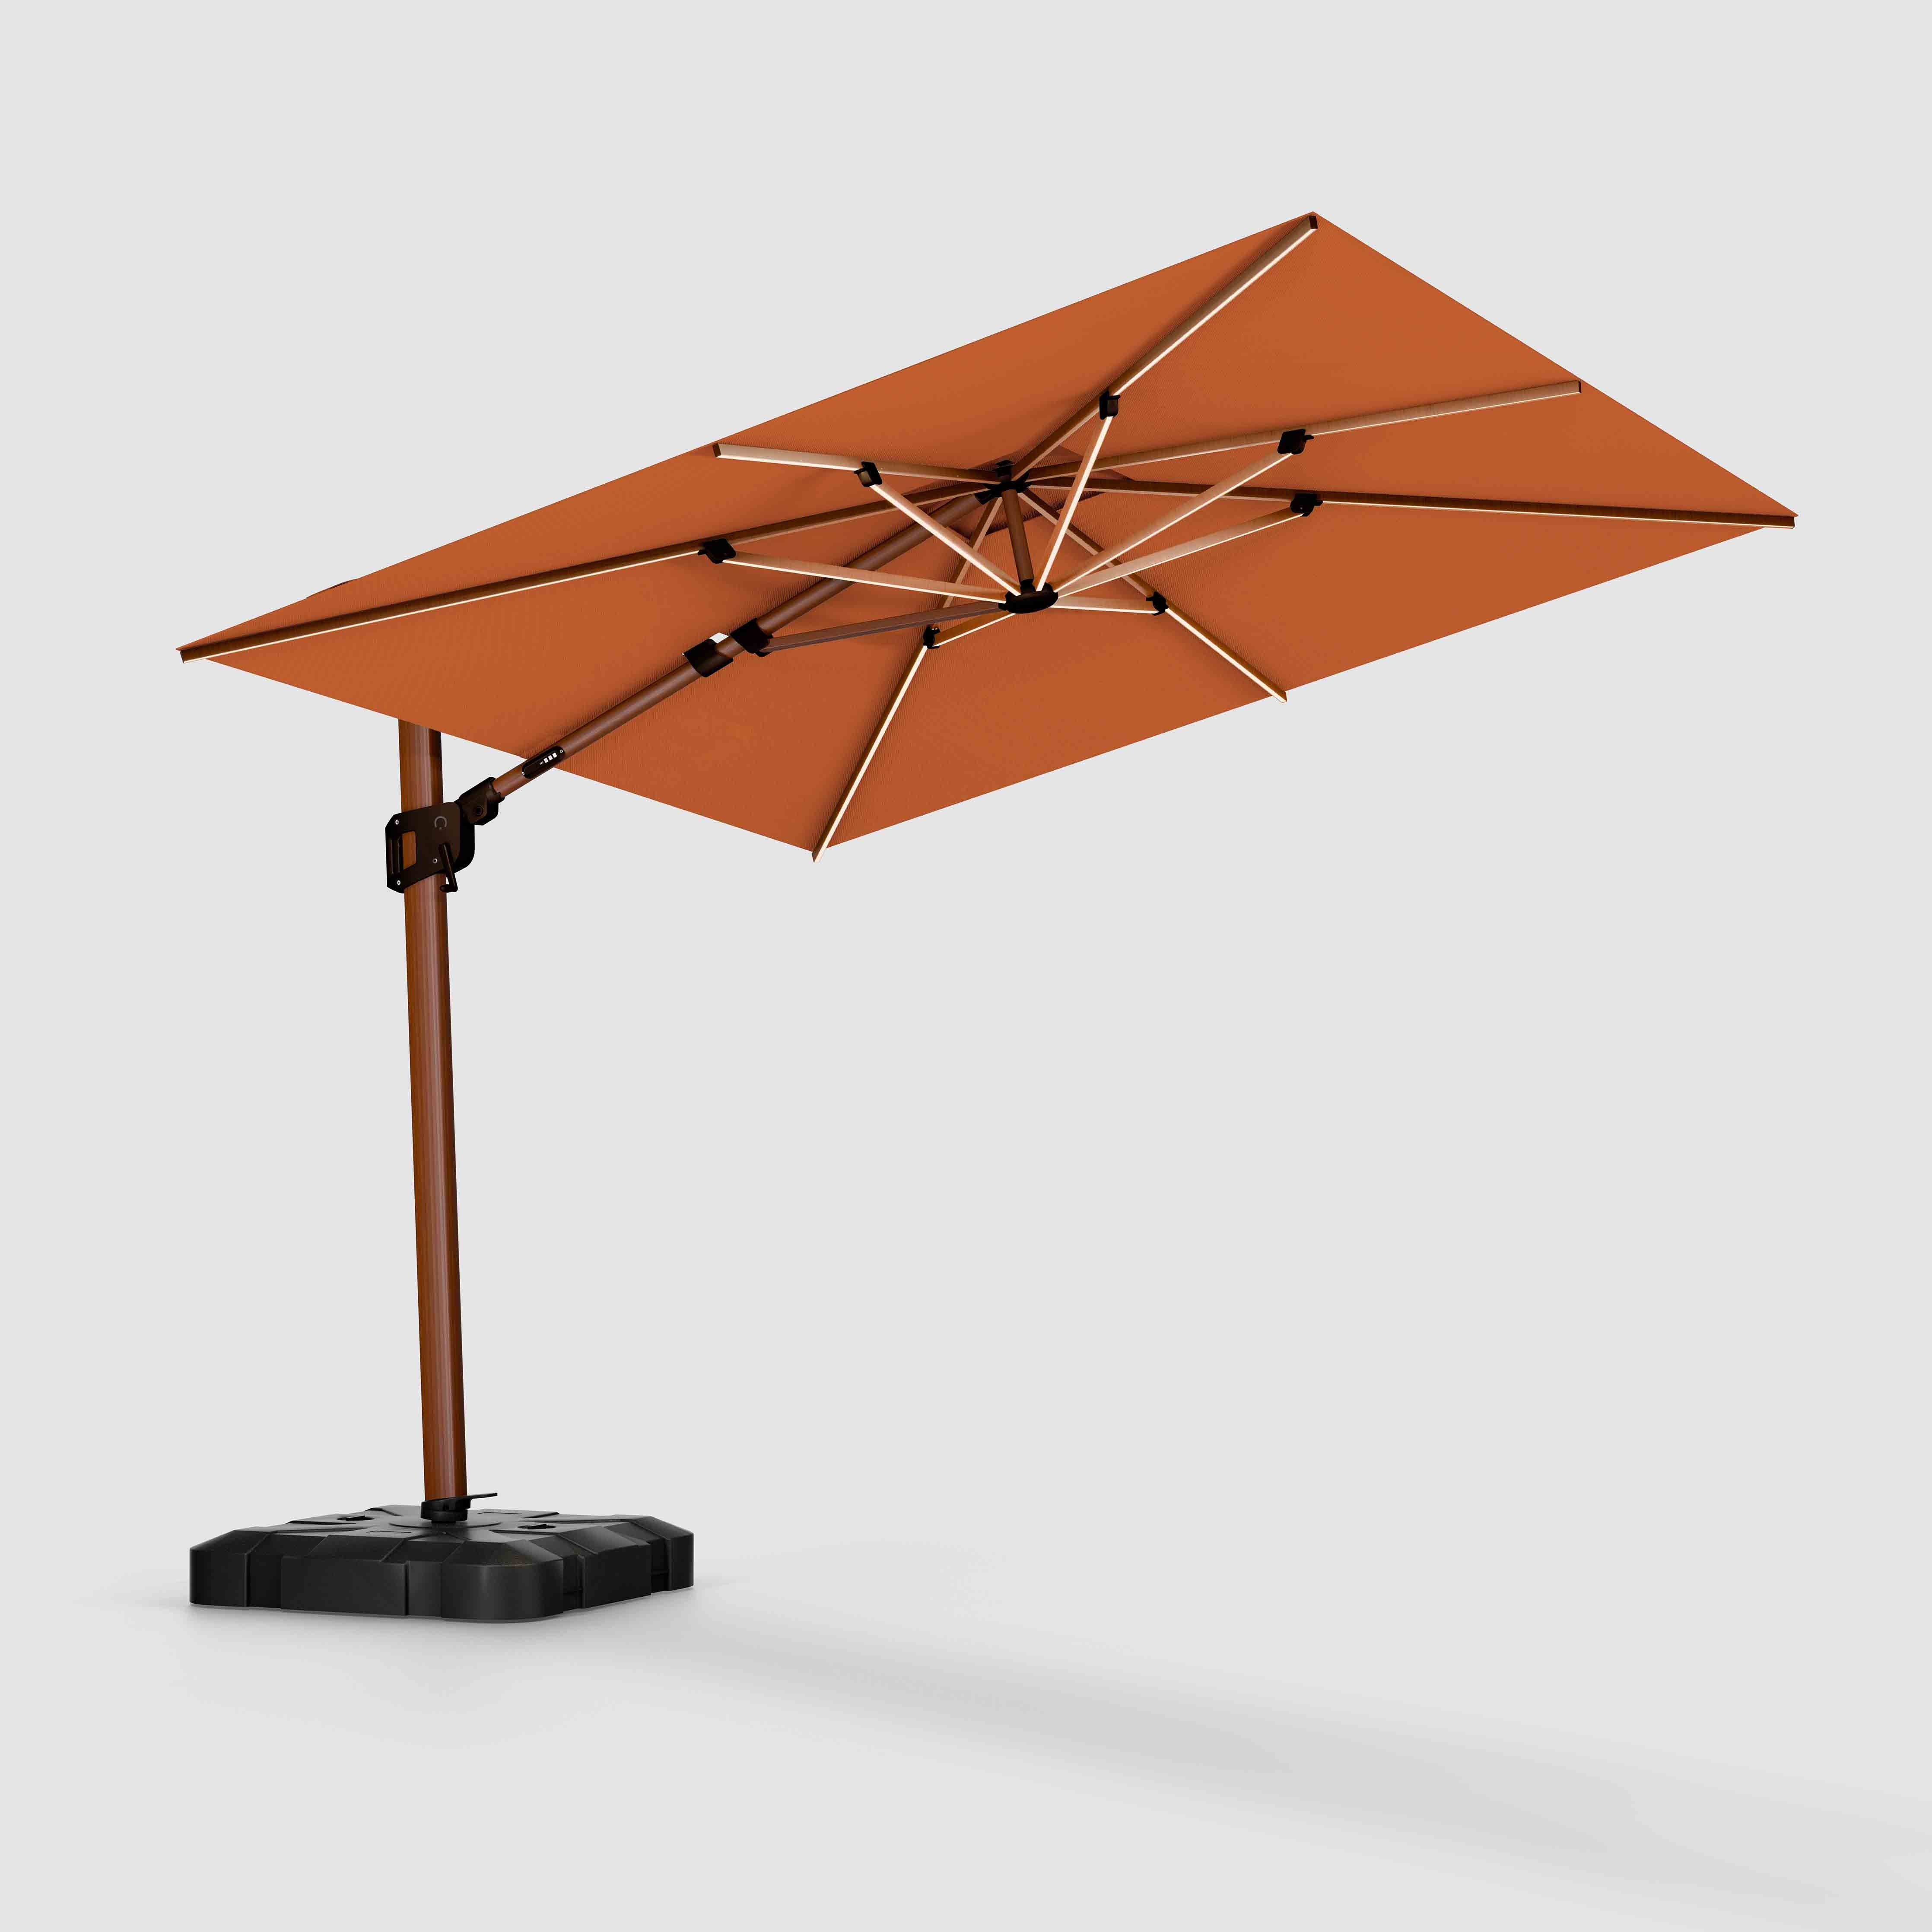 Le Supreme Wooden™ - Terre cuite Sunbrella